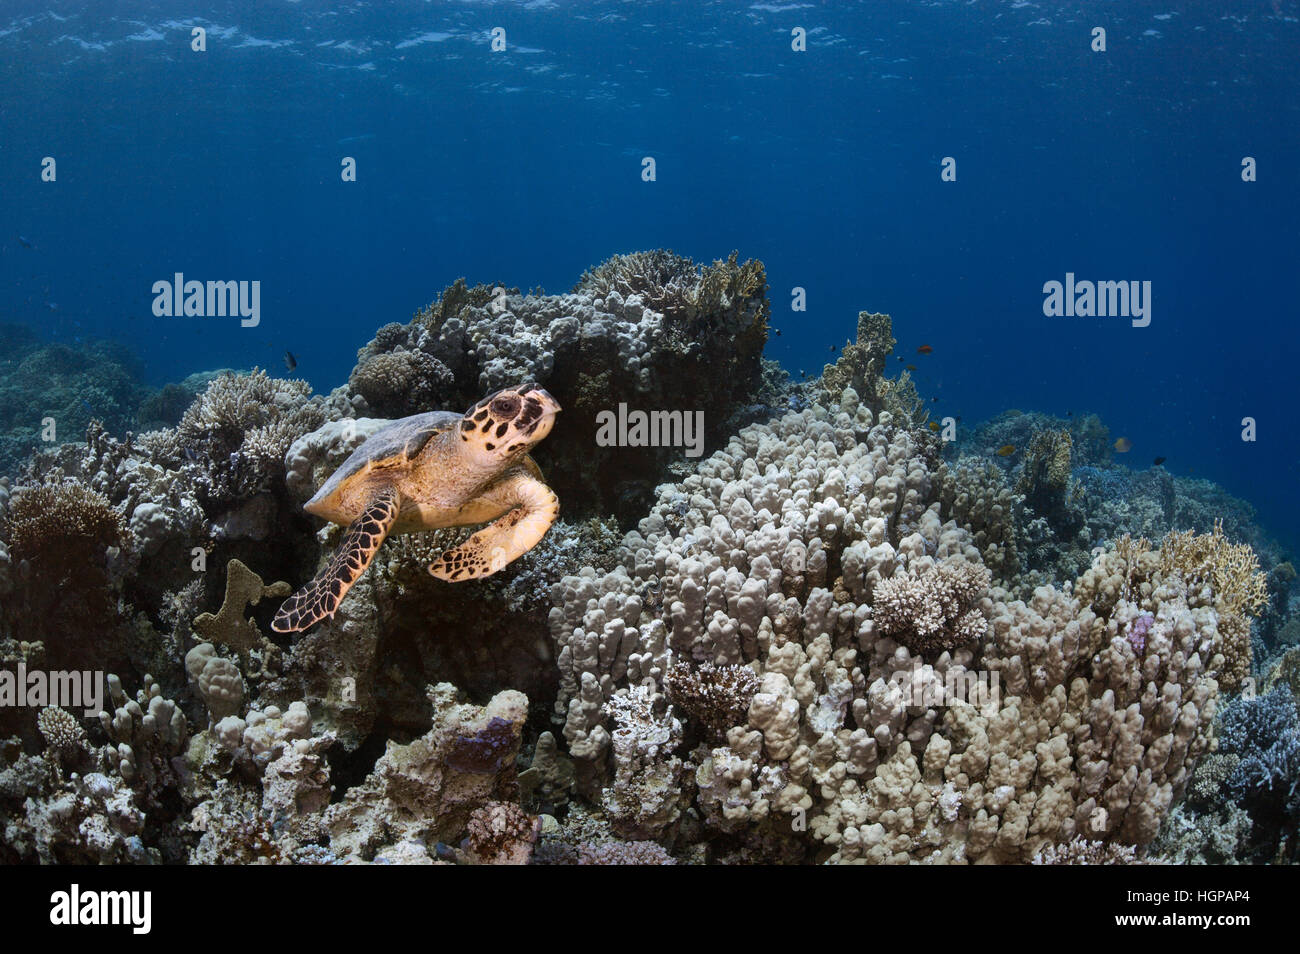 Foto submarina de la tortuga carey (Eretmochelys imbricata) nadando por encima de los arrecifes de coral en el Mar Rojo, cerca de las costas de Hurghada. Foto de stock